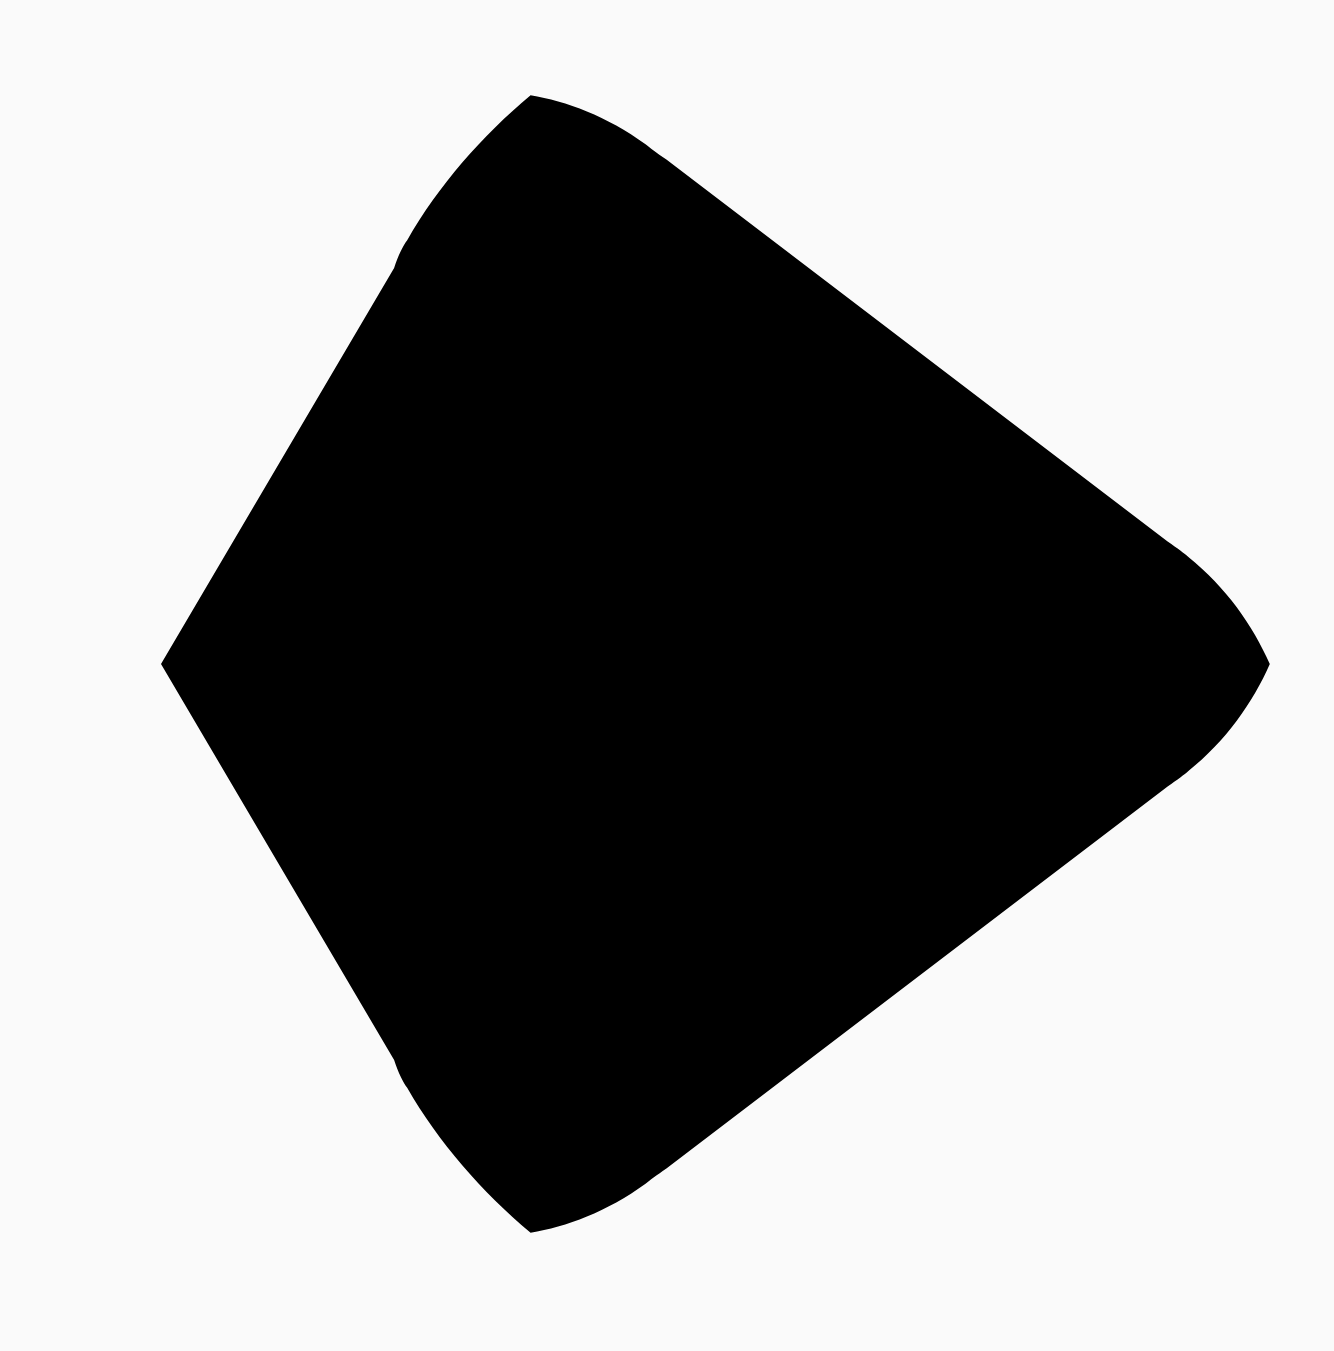 丸みを帯びた三角形と正方形の 50% の距離